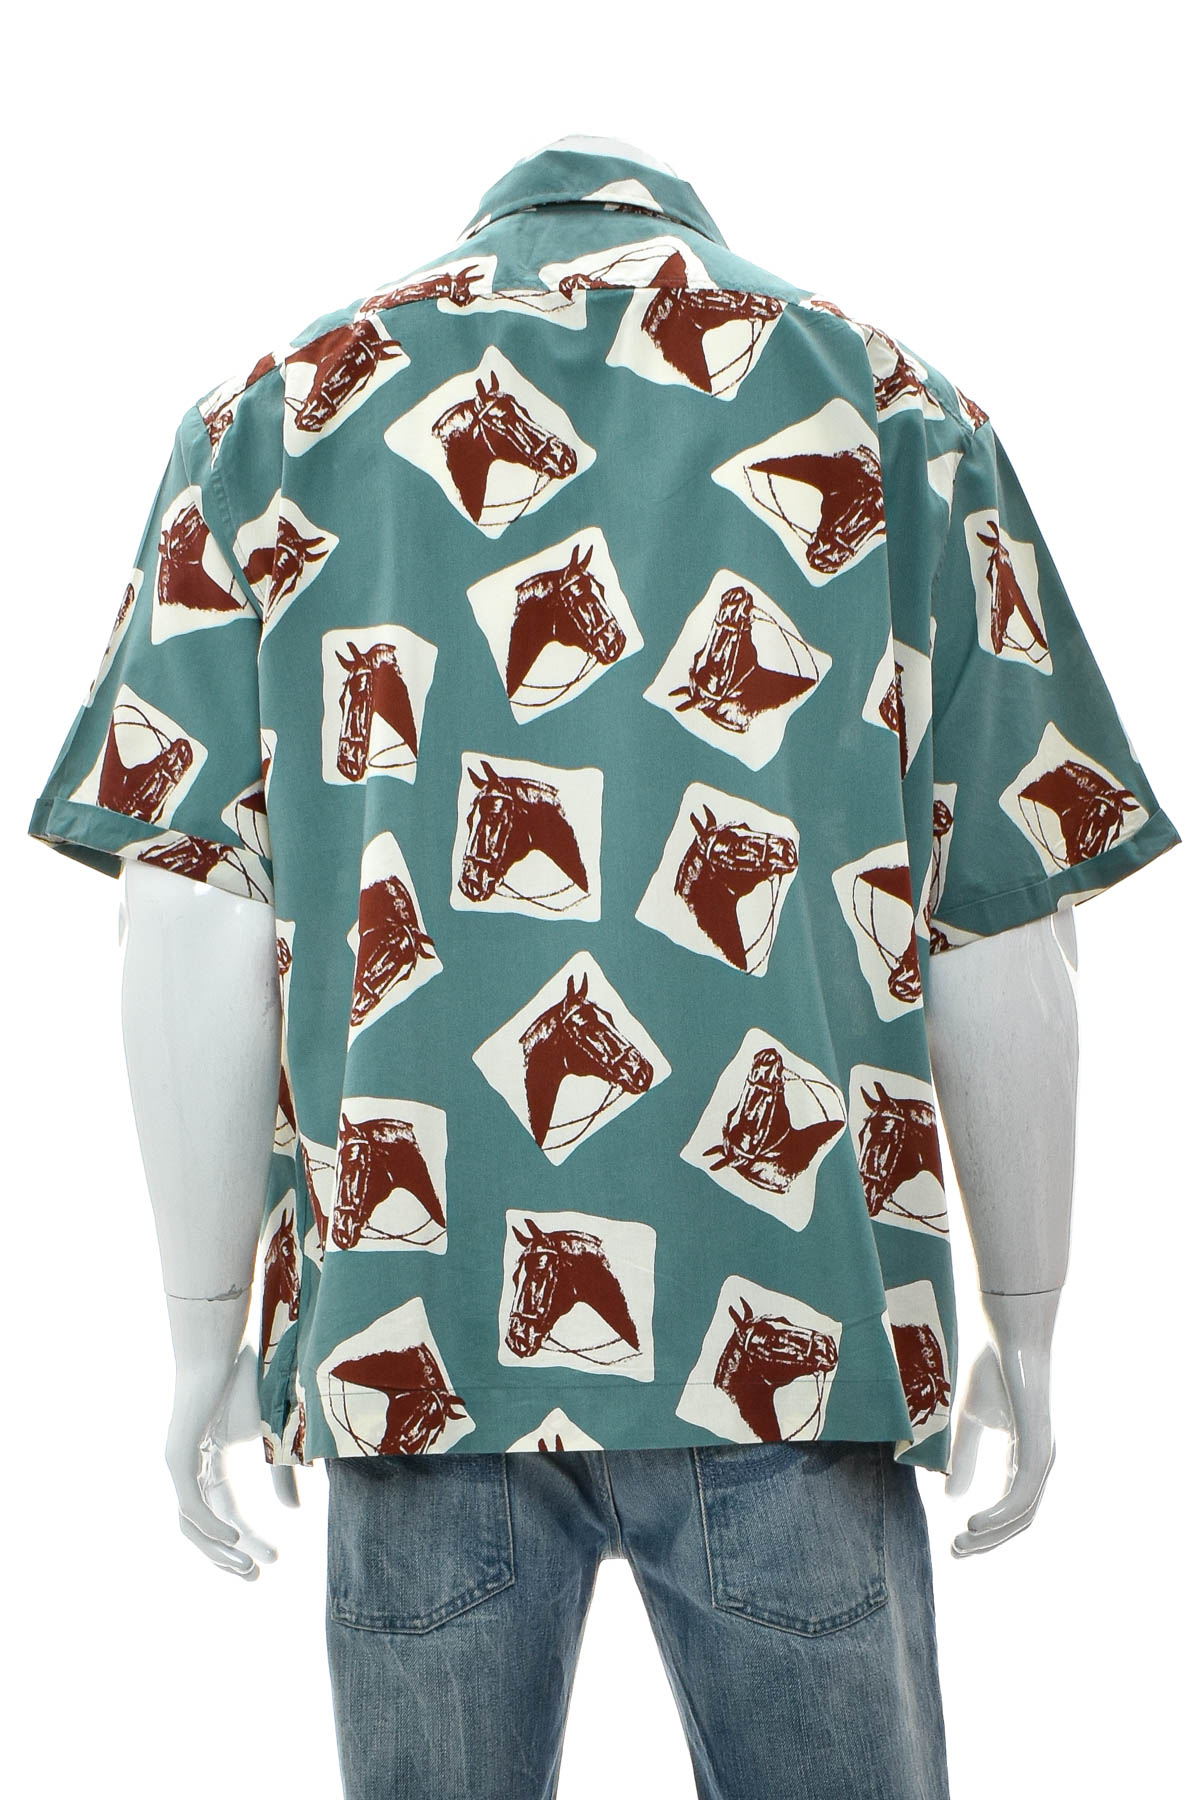 Men's shirt - Penguin - 1